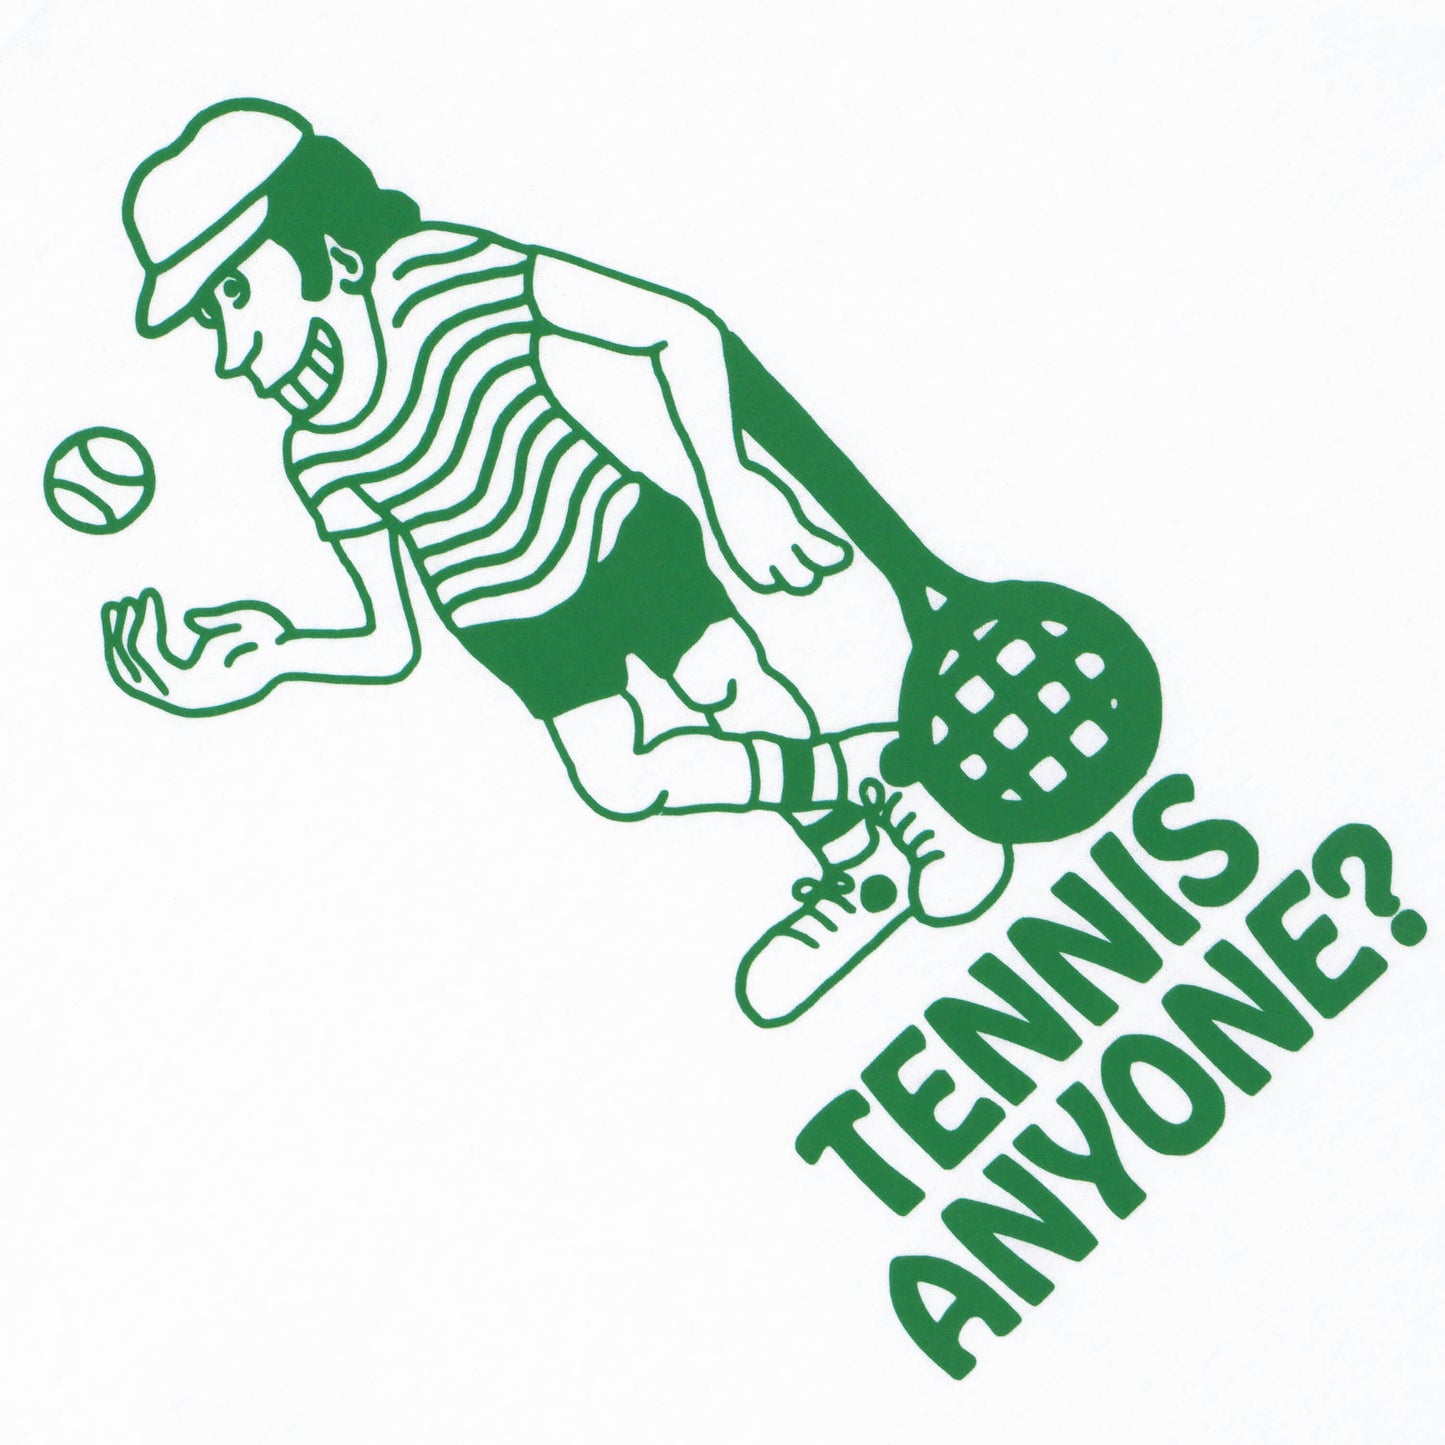 Tennis Anyone? Tee